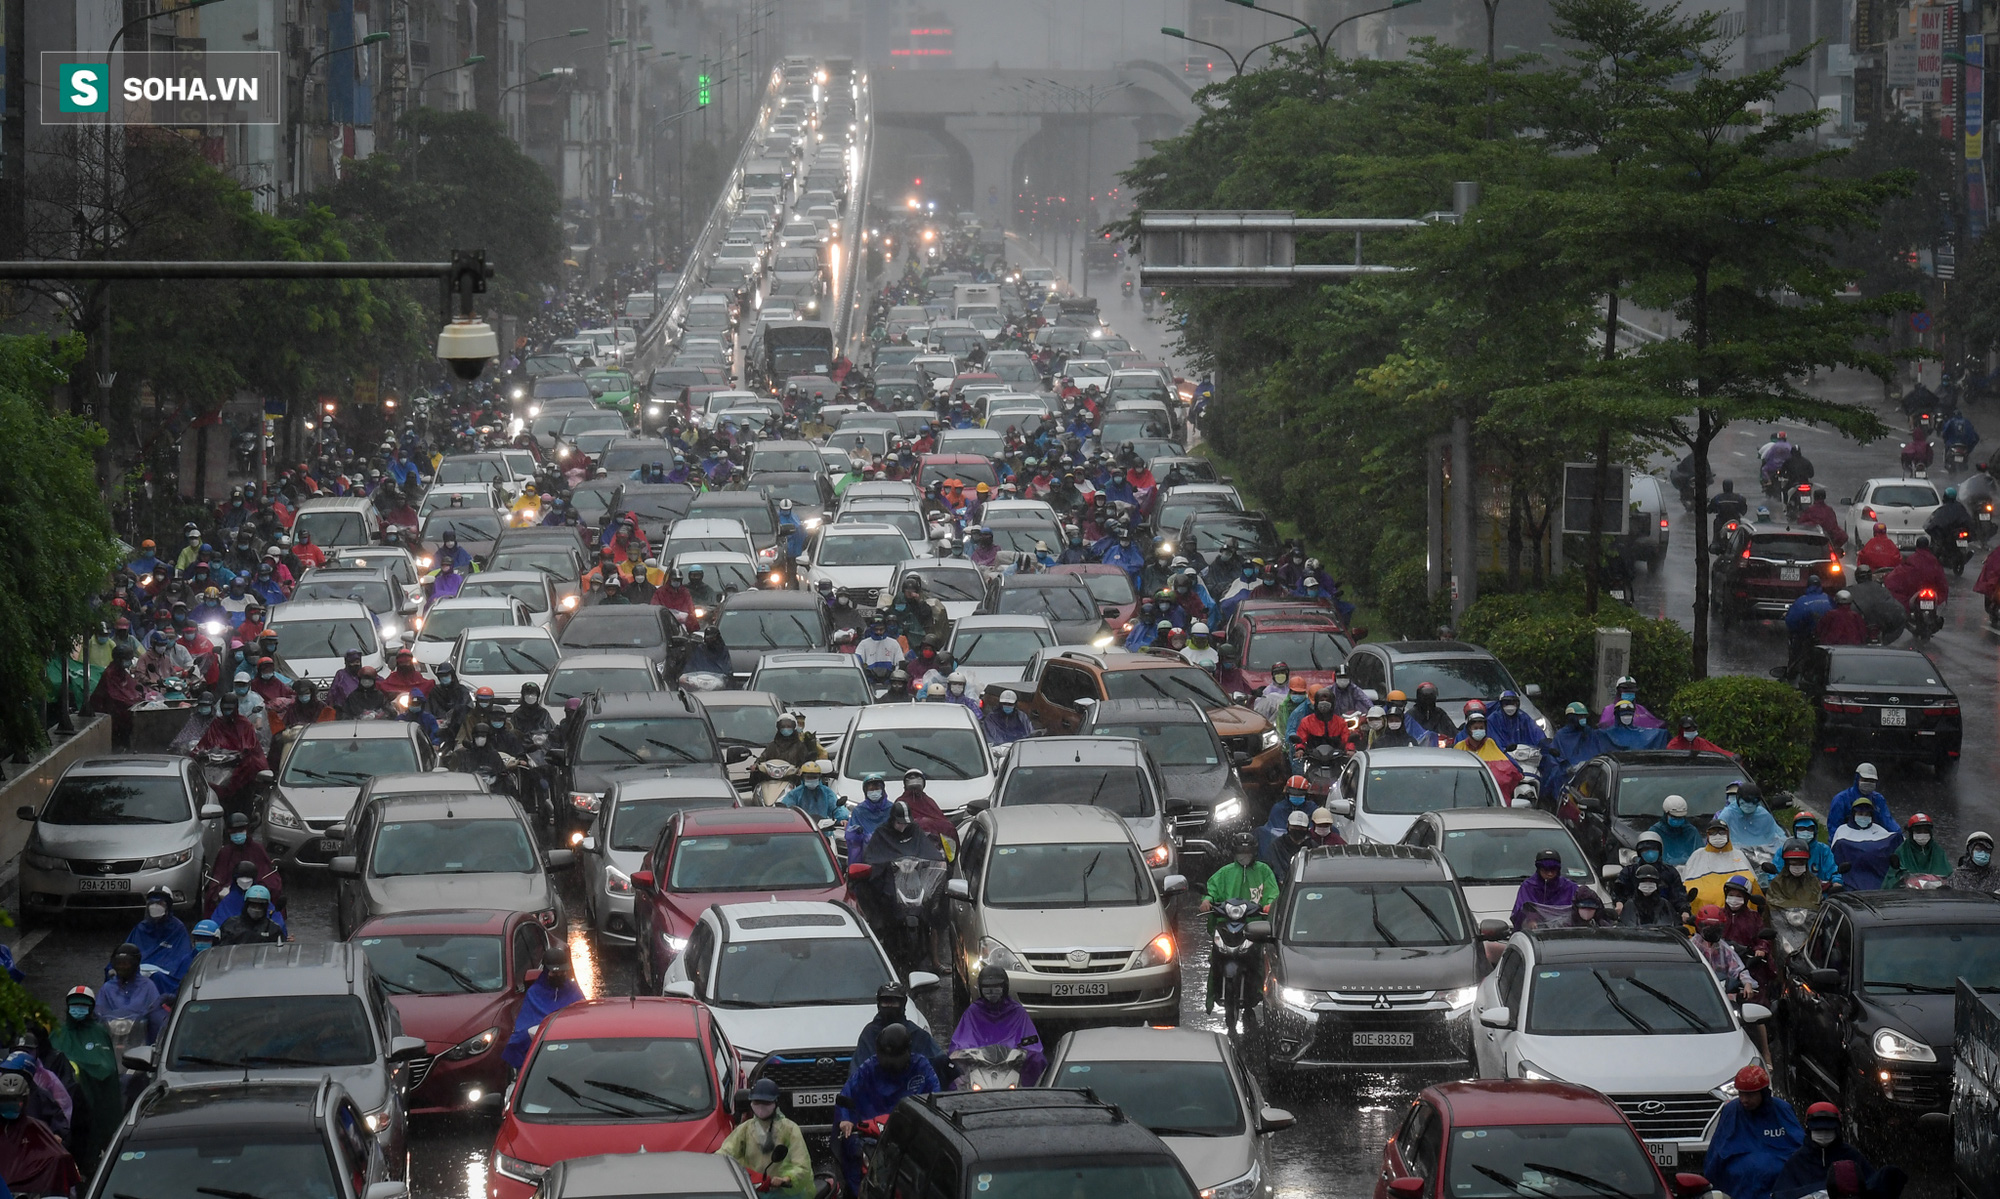 Đường phố Hà Nội tắc cứng trong mưa sáng đầu tuần, ô tô dàn hàng 6 chiếm hết lòng đường - Ảnh 6.